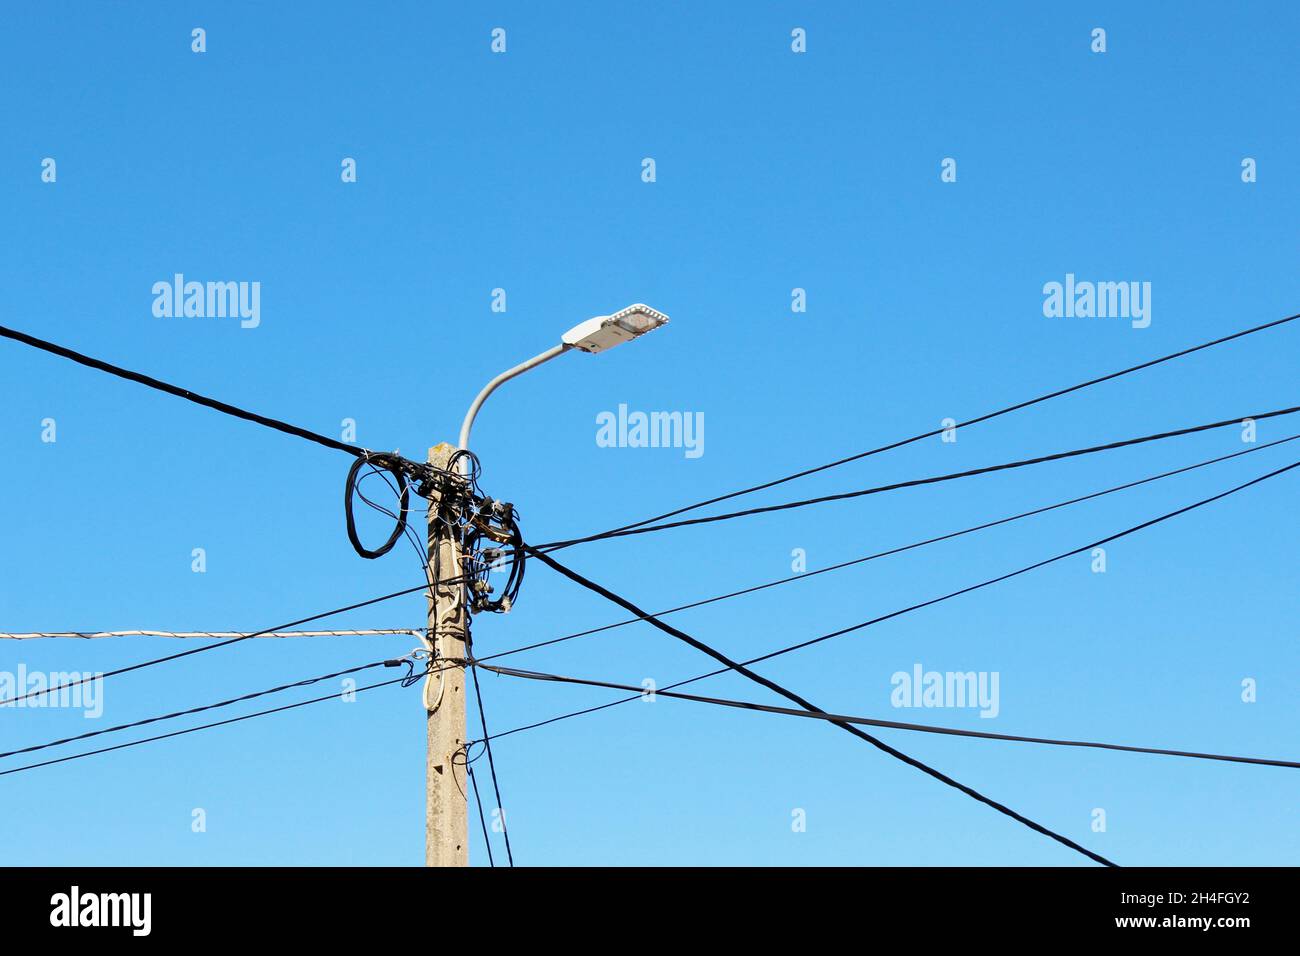 Strommasten  mit Laterne und mit vielen Stromleitungen, die um den Masten gewickelt sind, vor einem blauen, wolkenlosen Himmel in Espinho, Portugal. Stock Photo